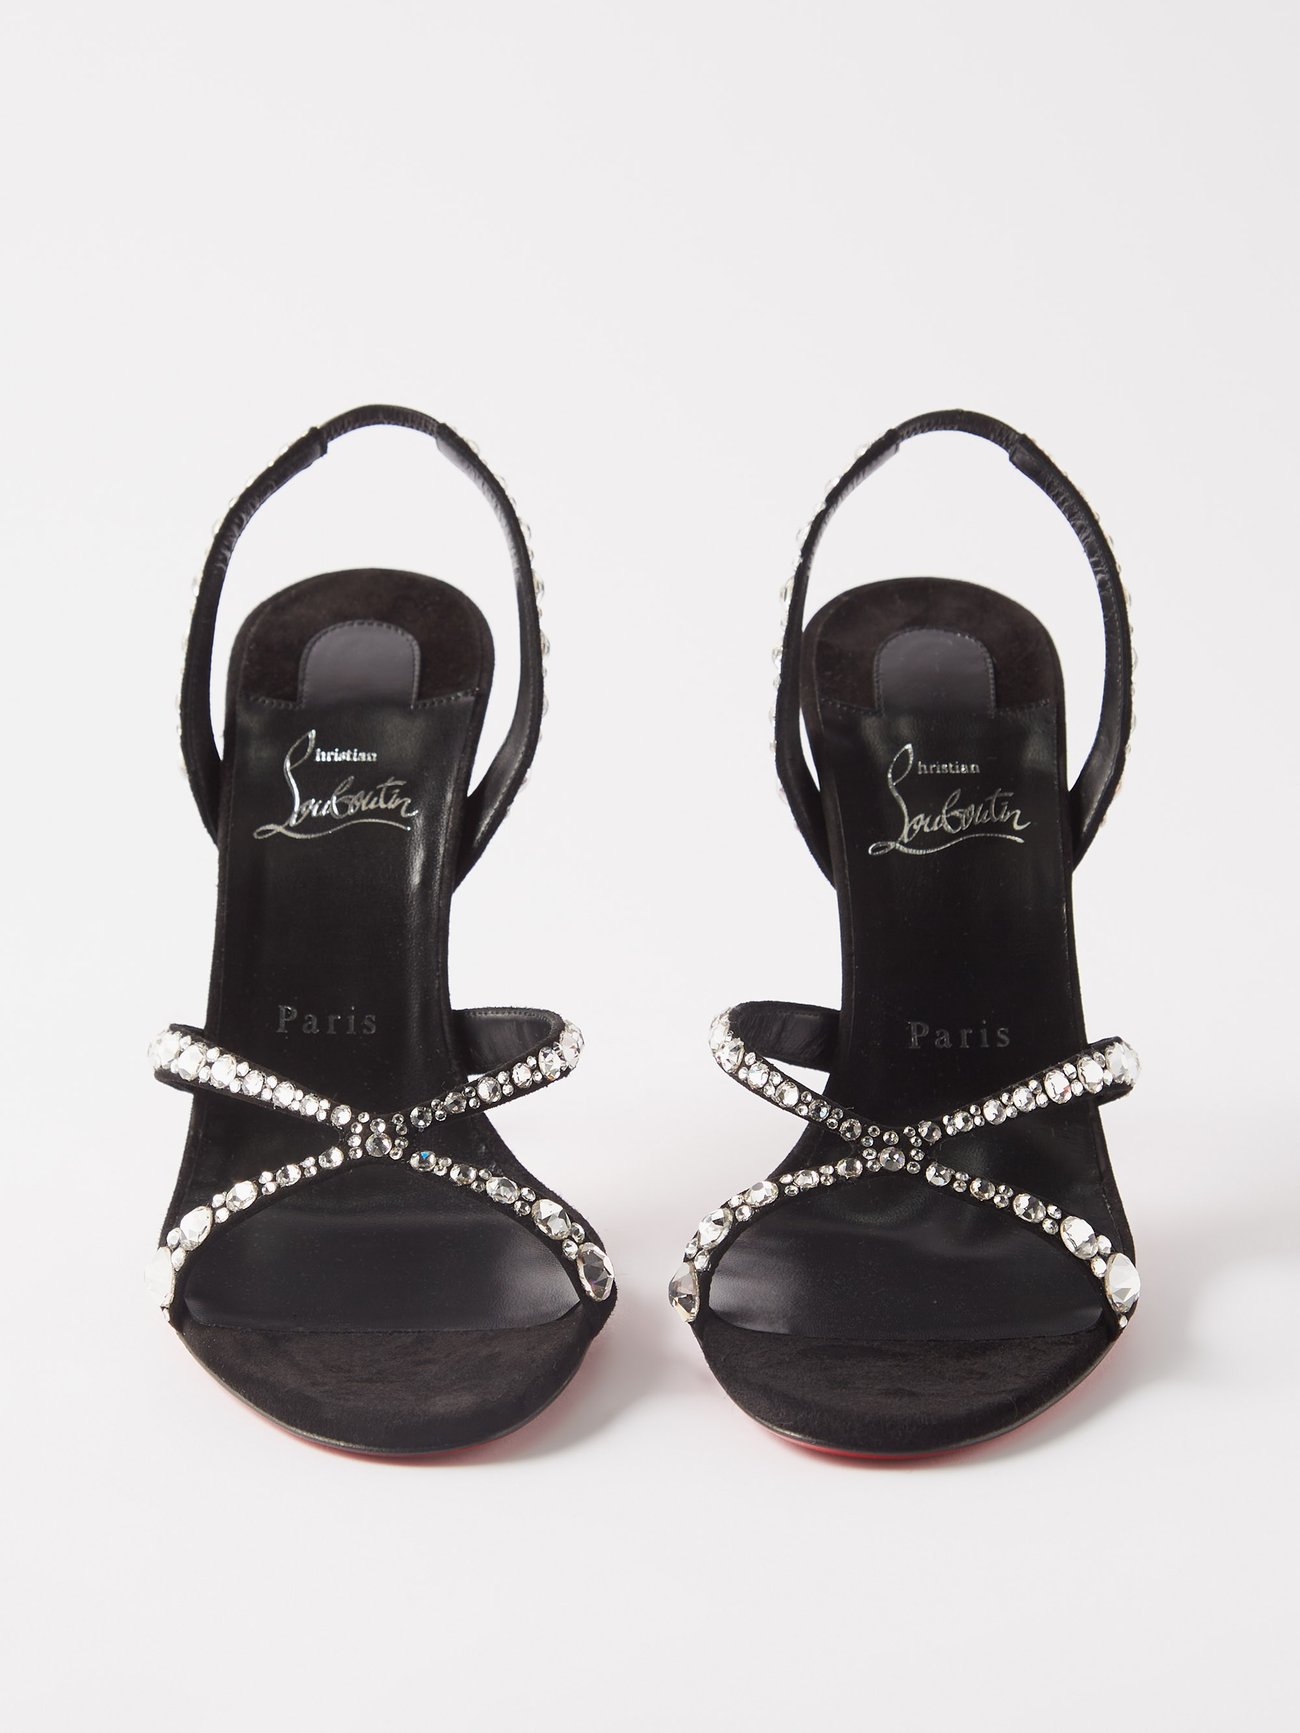 Emilie Embellished Slingback Sandals in Black - Christian Louboutin